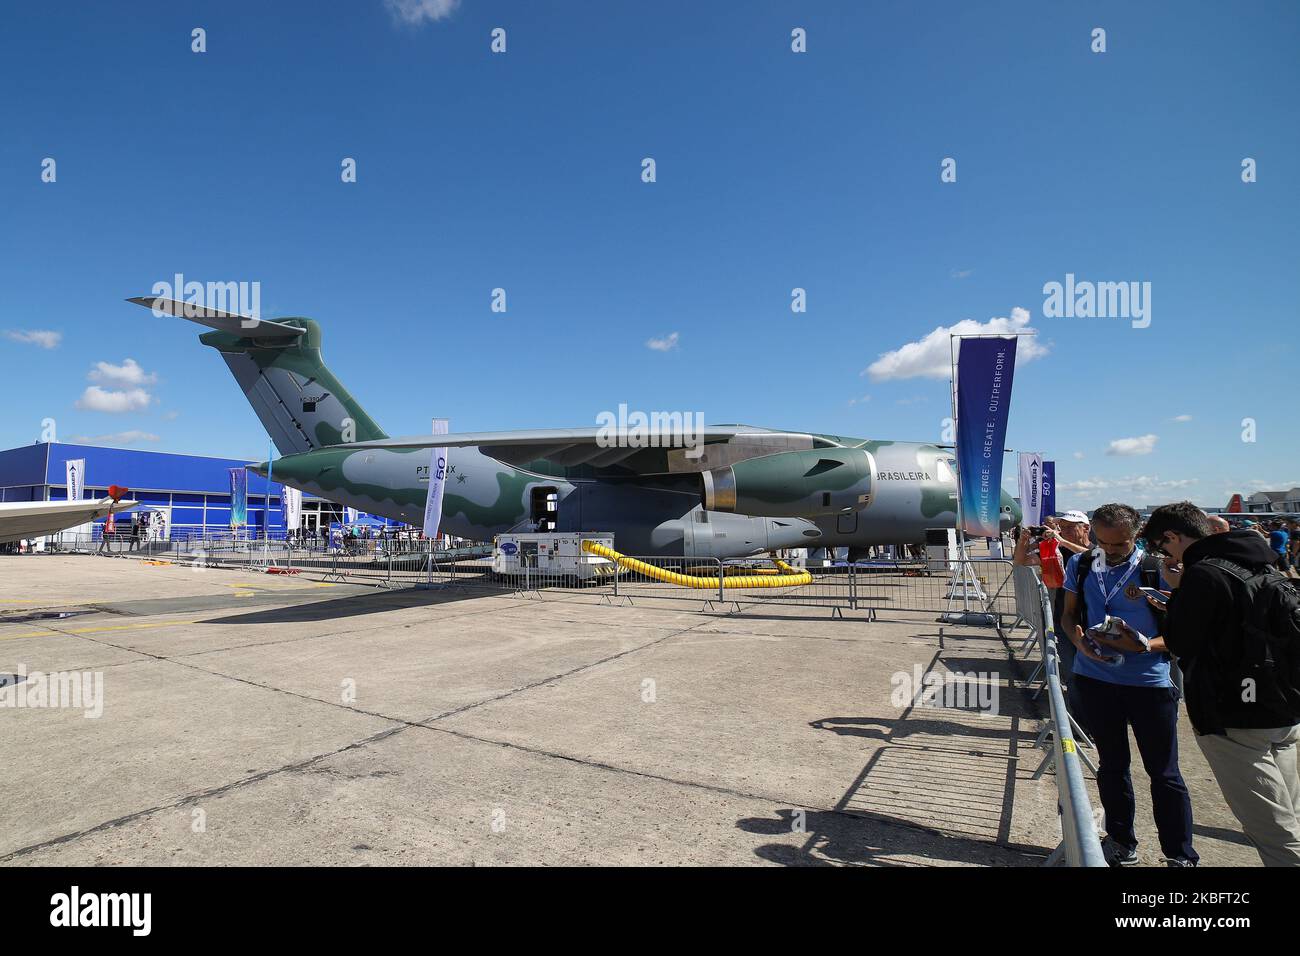 Die brasilianische Luftwaffe Embraer KC-390 wurde nach dem Vertrag von Boeing und Embraer in C-390 Millennium umbenannt, das in Brasilien hergestellte mittelgroße Transportflugzeug, wie es auf der Pariser Luftfahrtschau 53. Le Bourget in Frankreich am 21. Juni 2019 zu sehen war. Es wird vom brasilianischen Luft- und Raumfahrthersteller Embraer Defence and Security mit seinem ersten Flug am 3. Februar 2019 hergestellt. Das militärische Mehrzweckflugzeug für Fracht, Luftbetankung und Truppen kann 26 Tonnen in seinem Rumpf und den 2x IAE V2500-Triebwerken transportieren. Die Flugzeugzulassung ist PT-ZNX und gehört zur Flotte von Força Aérea Brasileira. Brasilien und die portugiesische Luftwaffe von Portuga Stockfoto